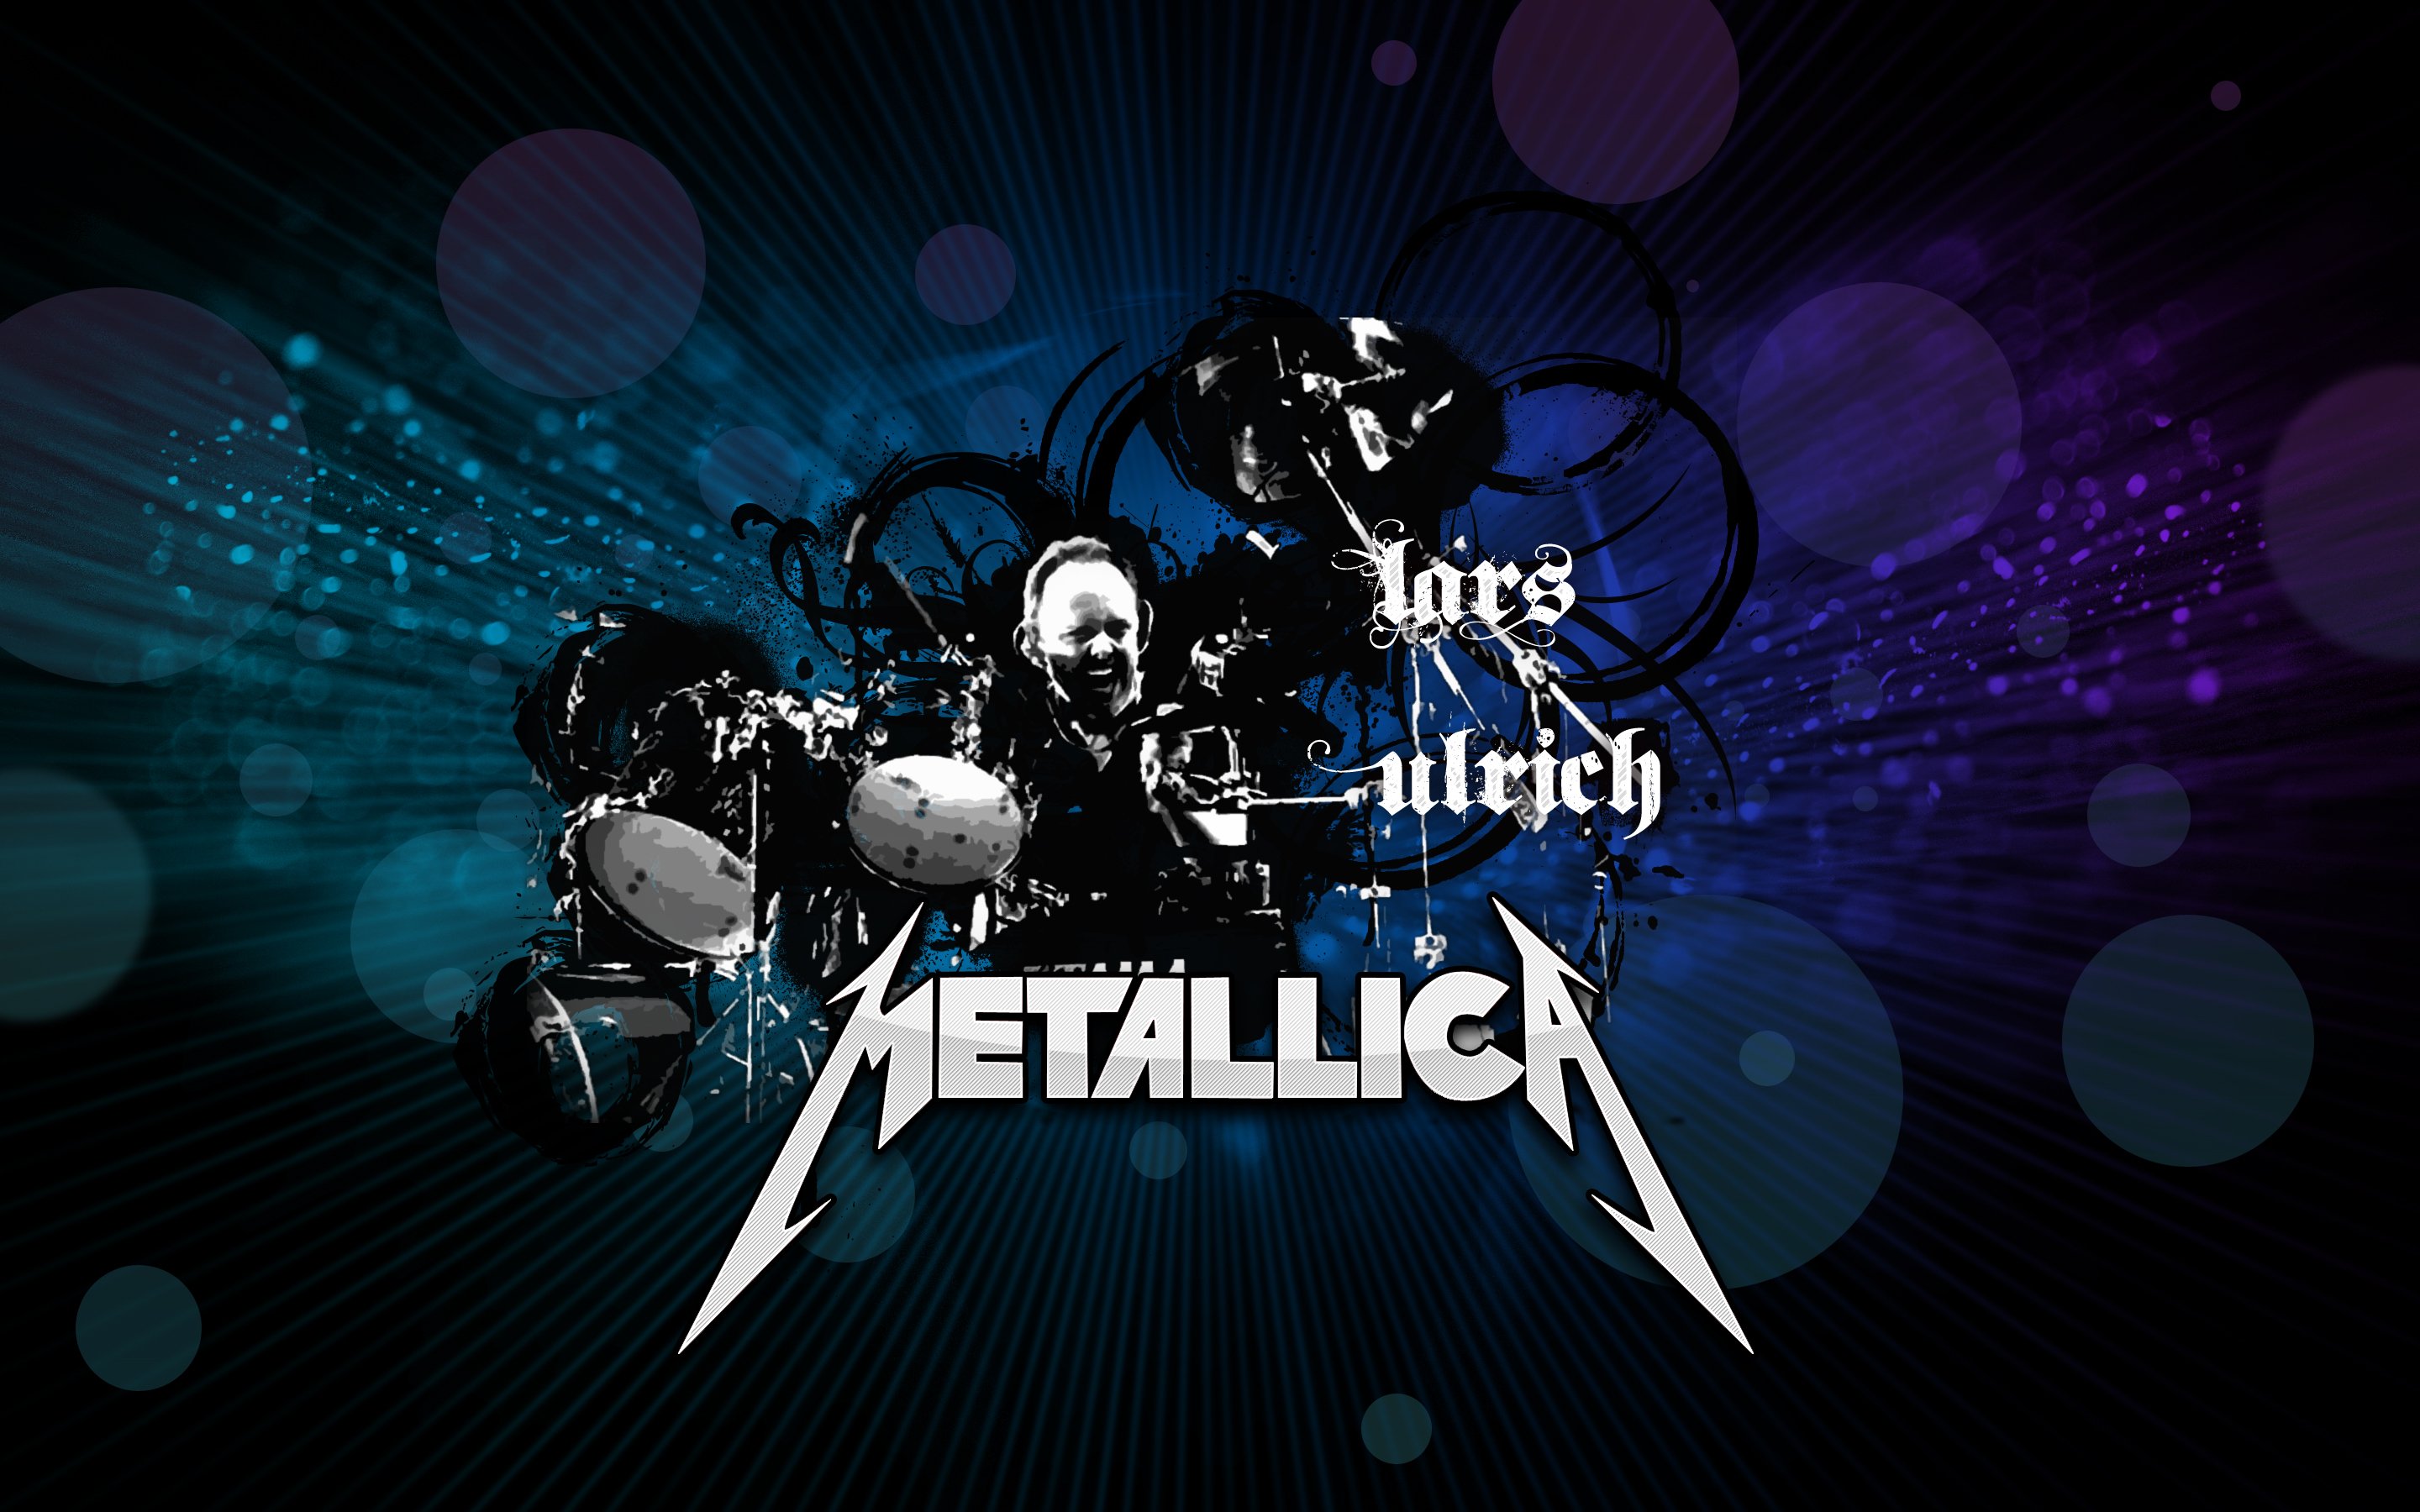 Metallica Wallpapers Backgrounds Pictures Metallica Wallpapers 30